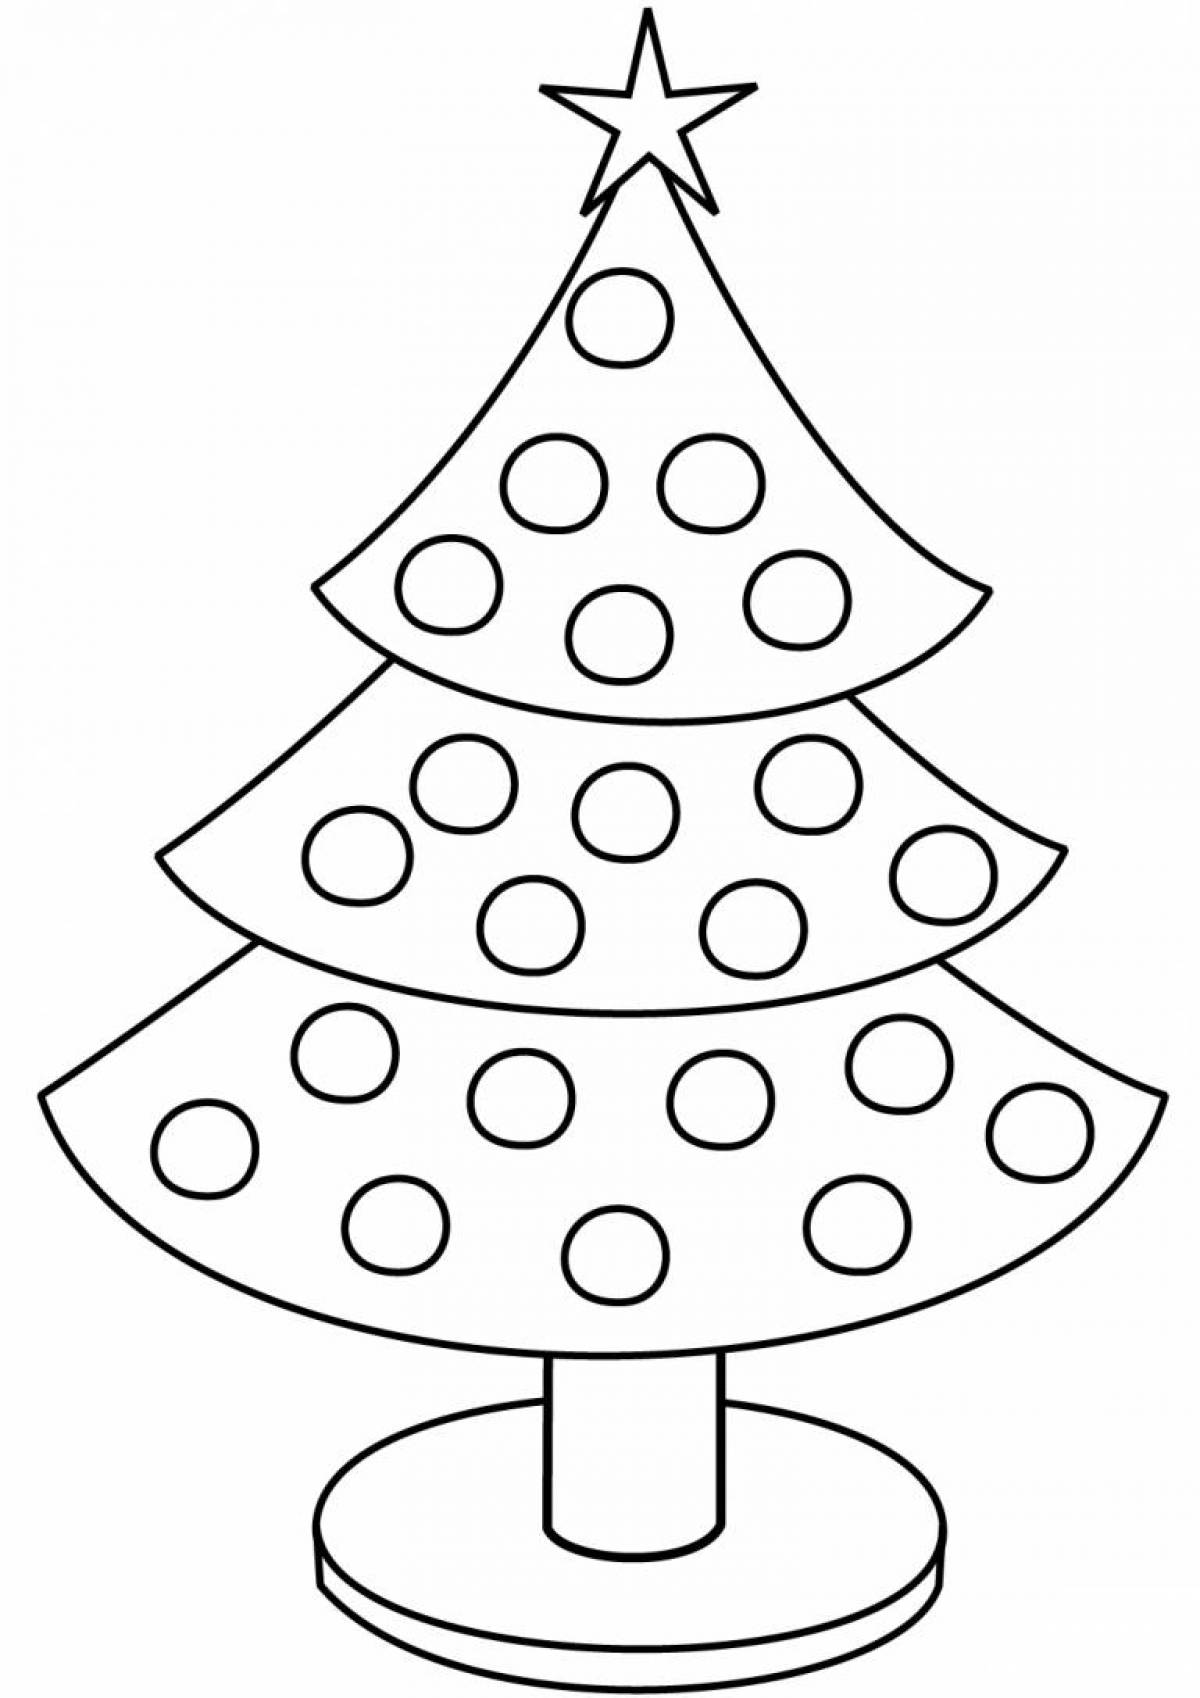 Раскраска блестящая новогодняя елка для детей 2-3 лет